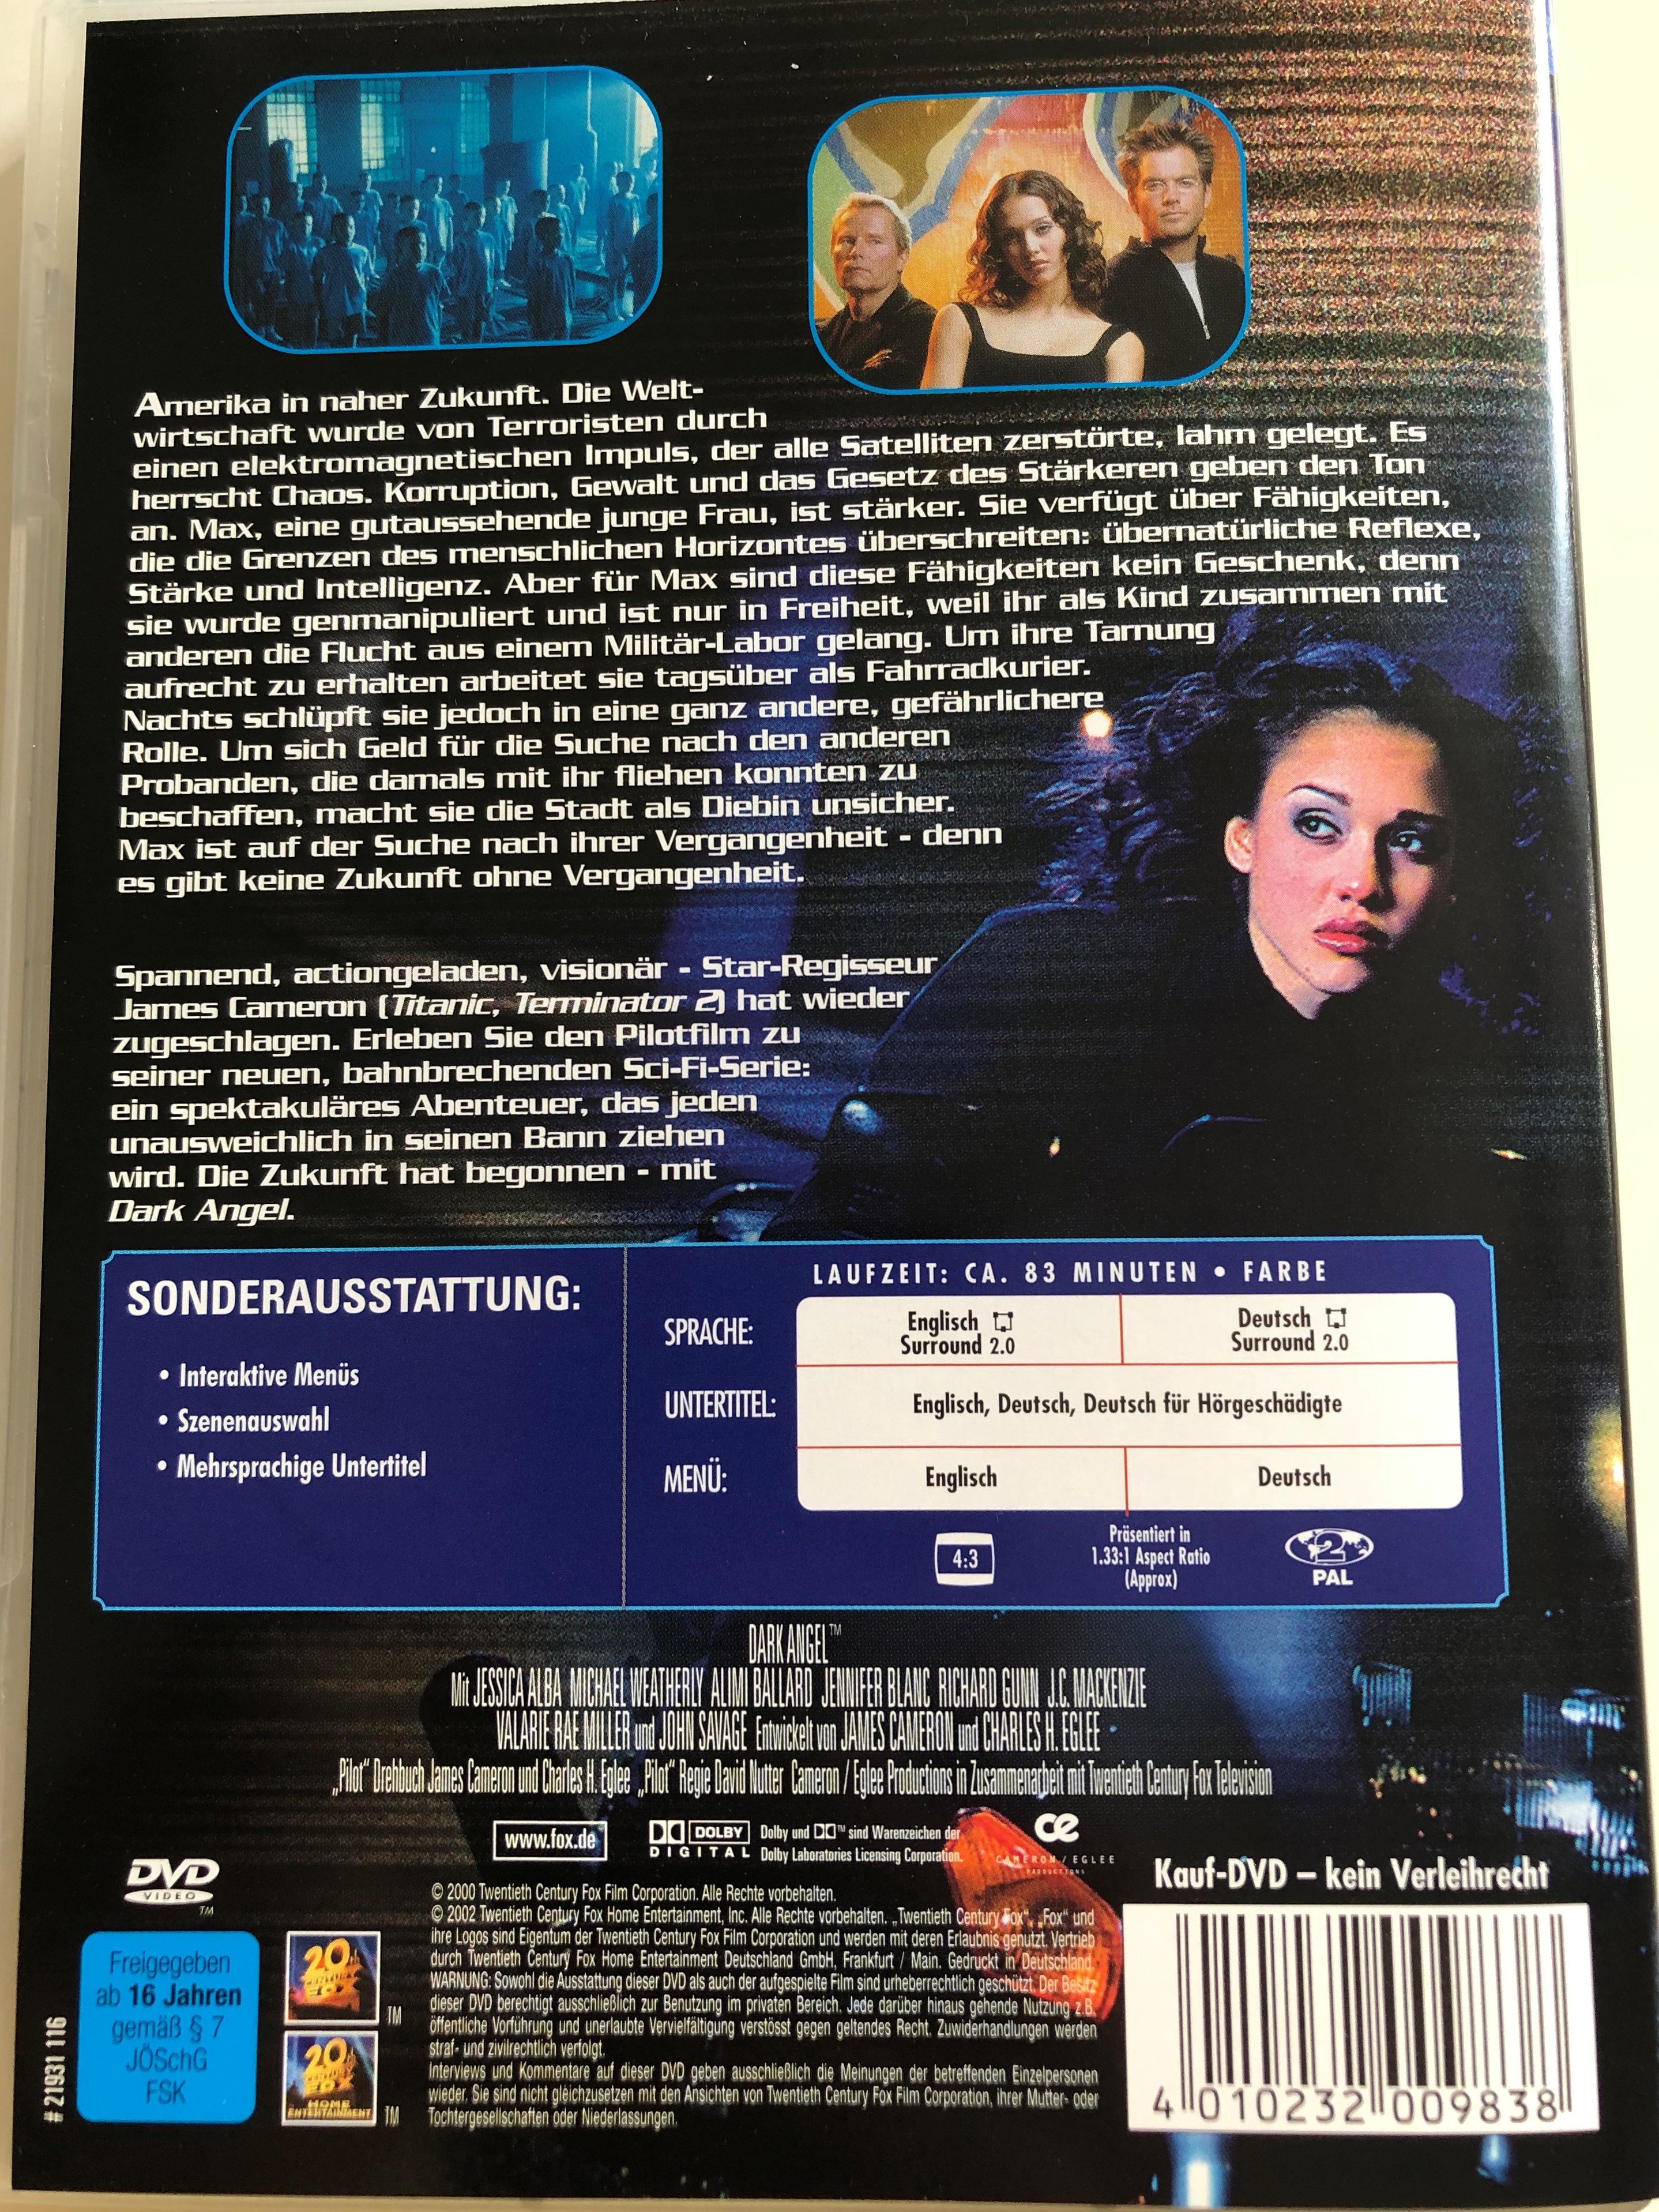 dark-angel-dvd-directed-by-james-cameron-starring-jessica-alba-michael-weatherly-alimi-ballard-jennifer-blanc-richard-gunn-es-gibt-keine-zukunft-ohne-vergangenheit-2-.jpg